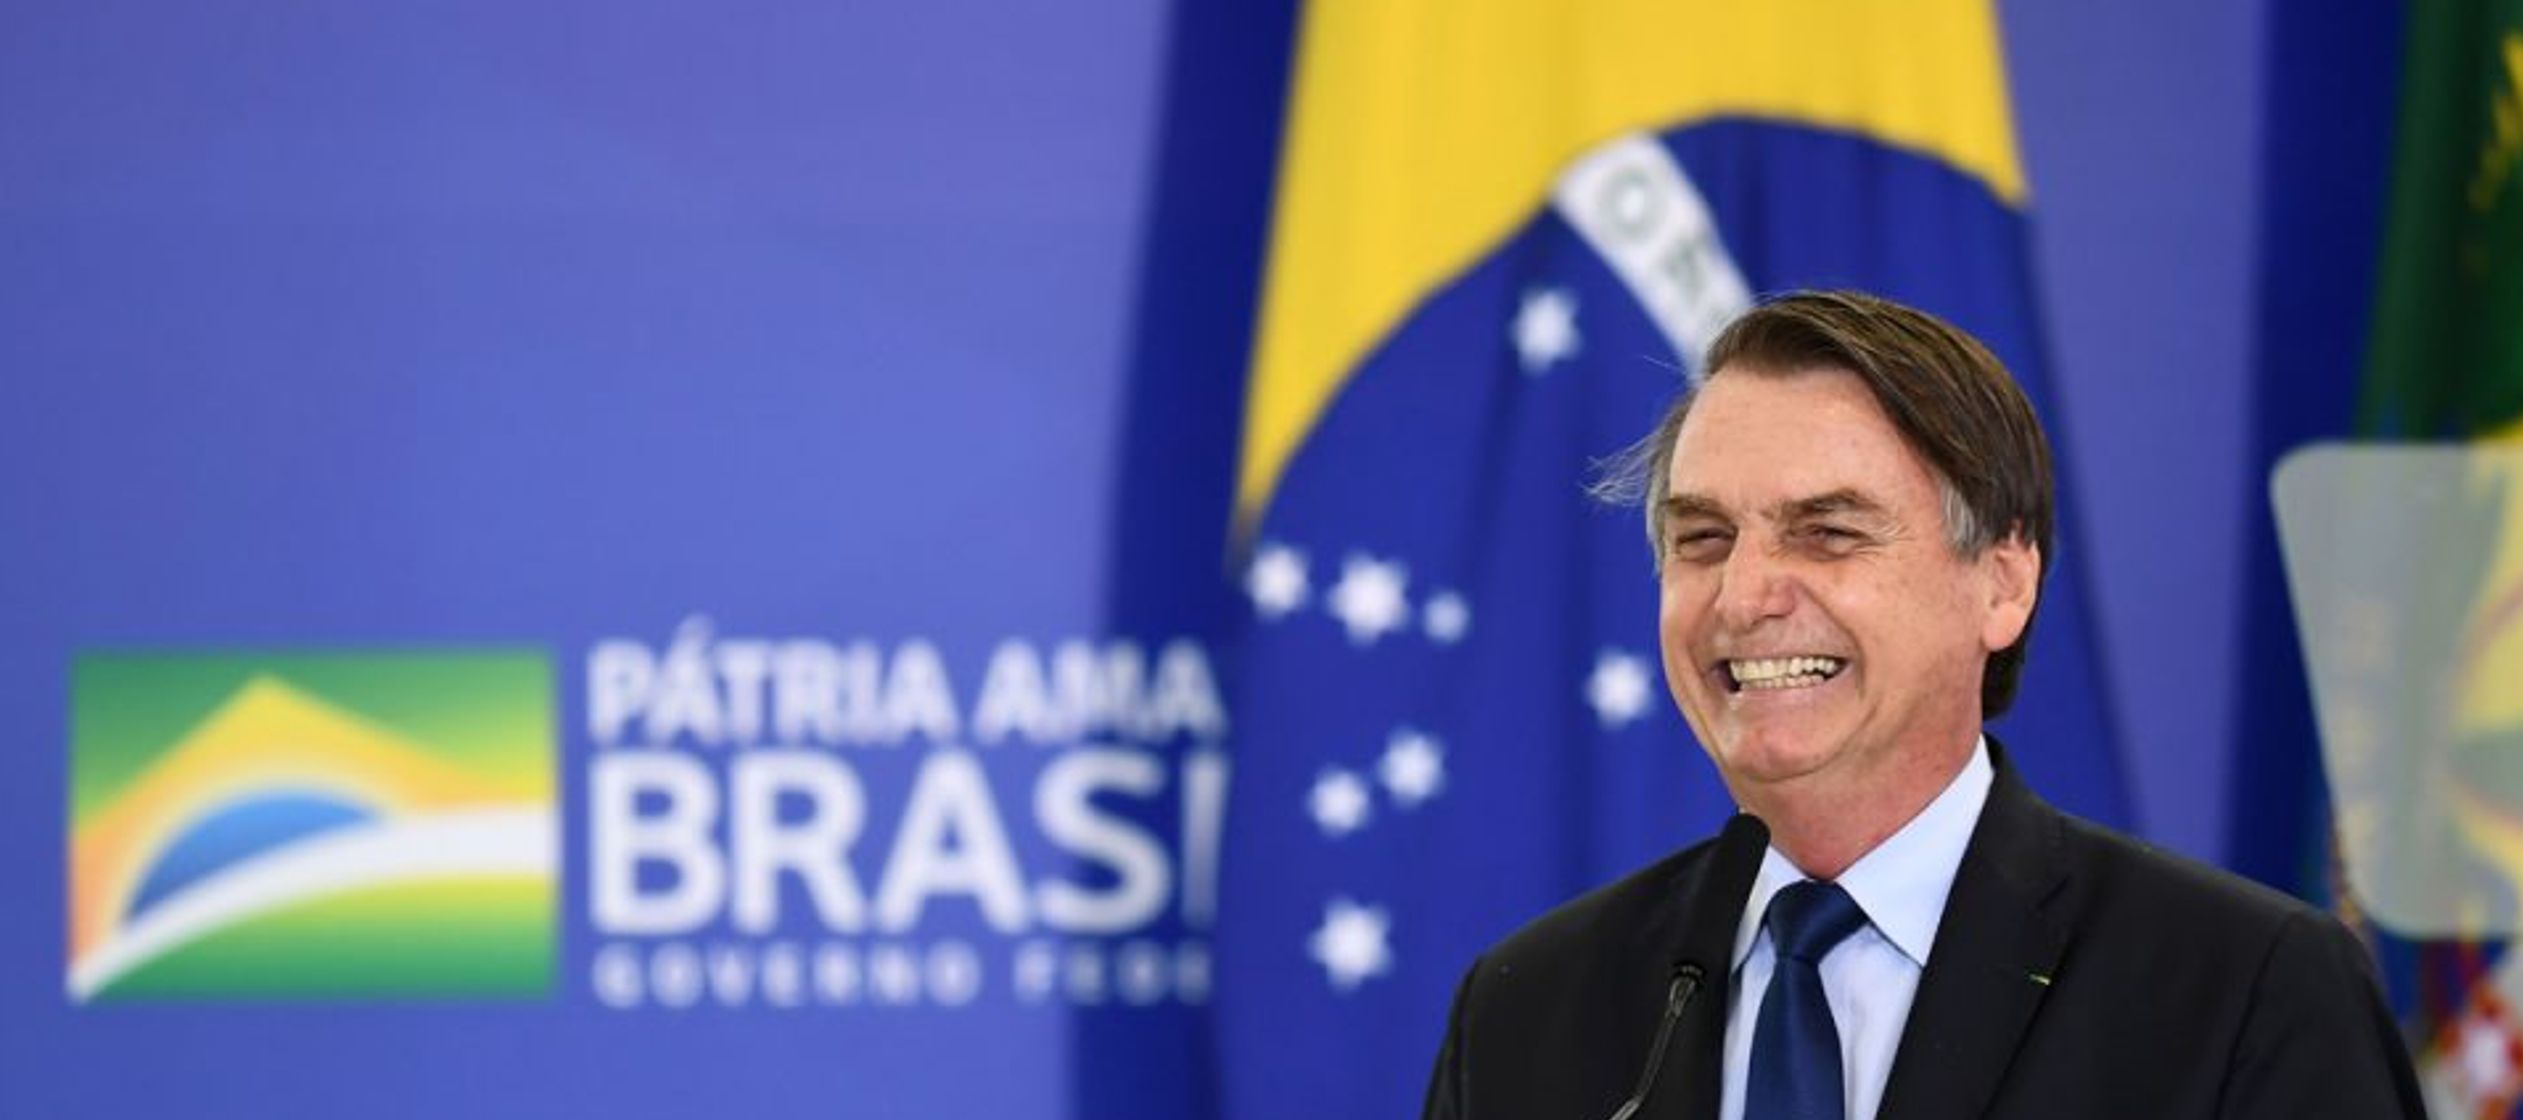 Empezando por esta última cuestión, Bolsonaro es el mandatario peor evaluado en sus...